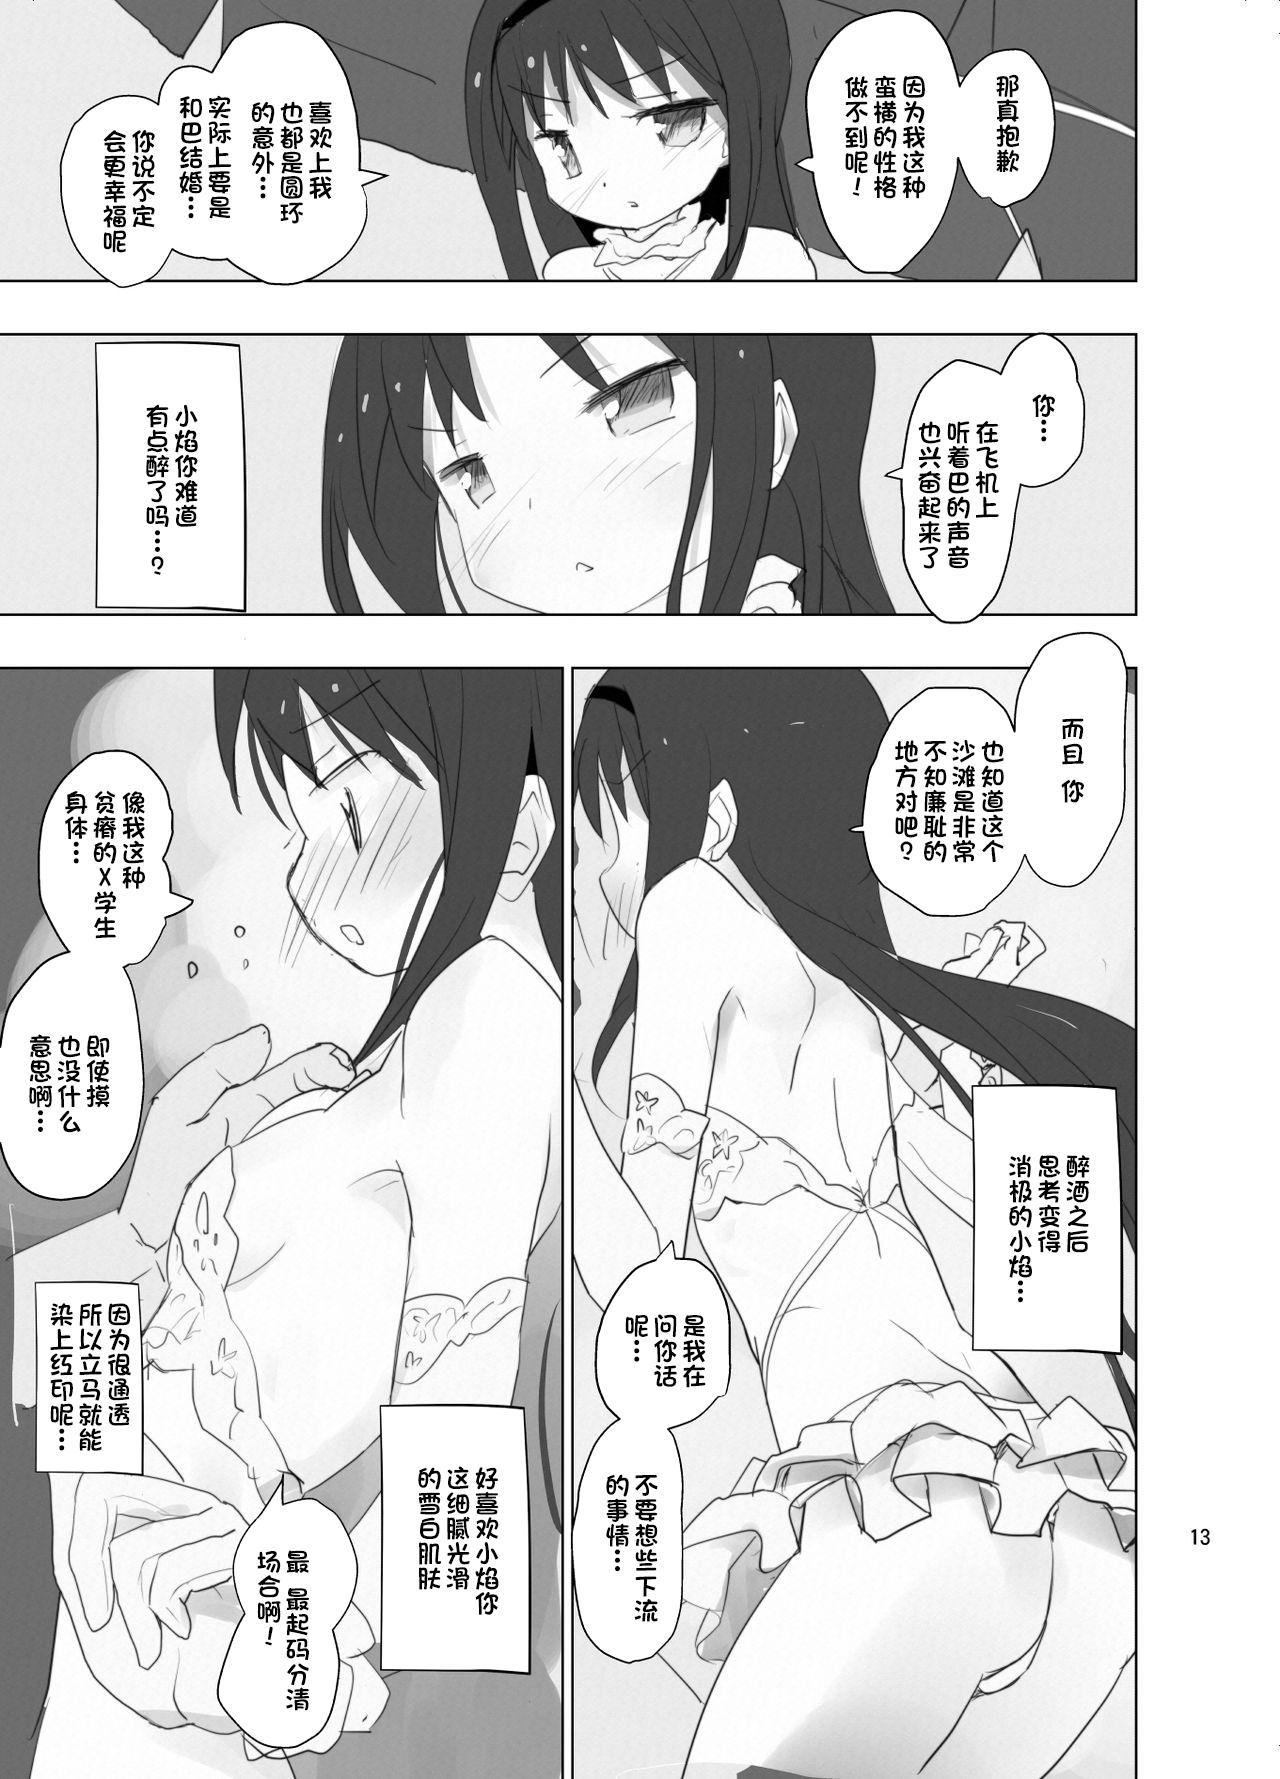 Pussyfucking Anata no Koto ga Daisuki na Homura-chan to Iku Shuudan Roshutsu Shinkon Ryokou Hawaii!! - Puella magi madoka magica Negra - Page 13